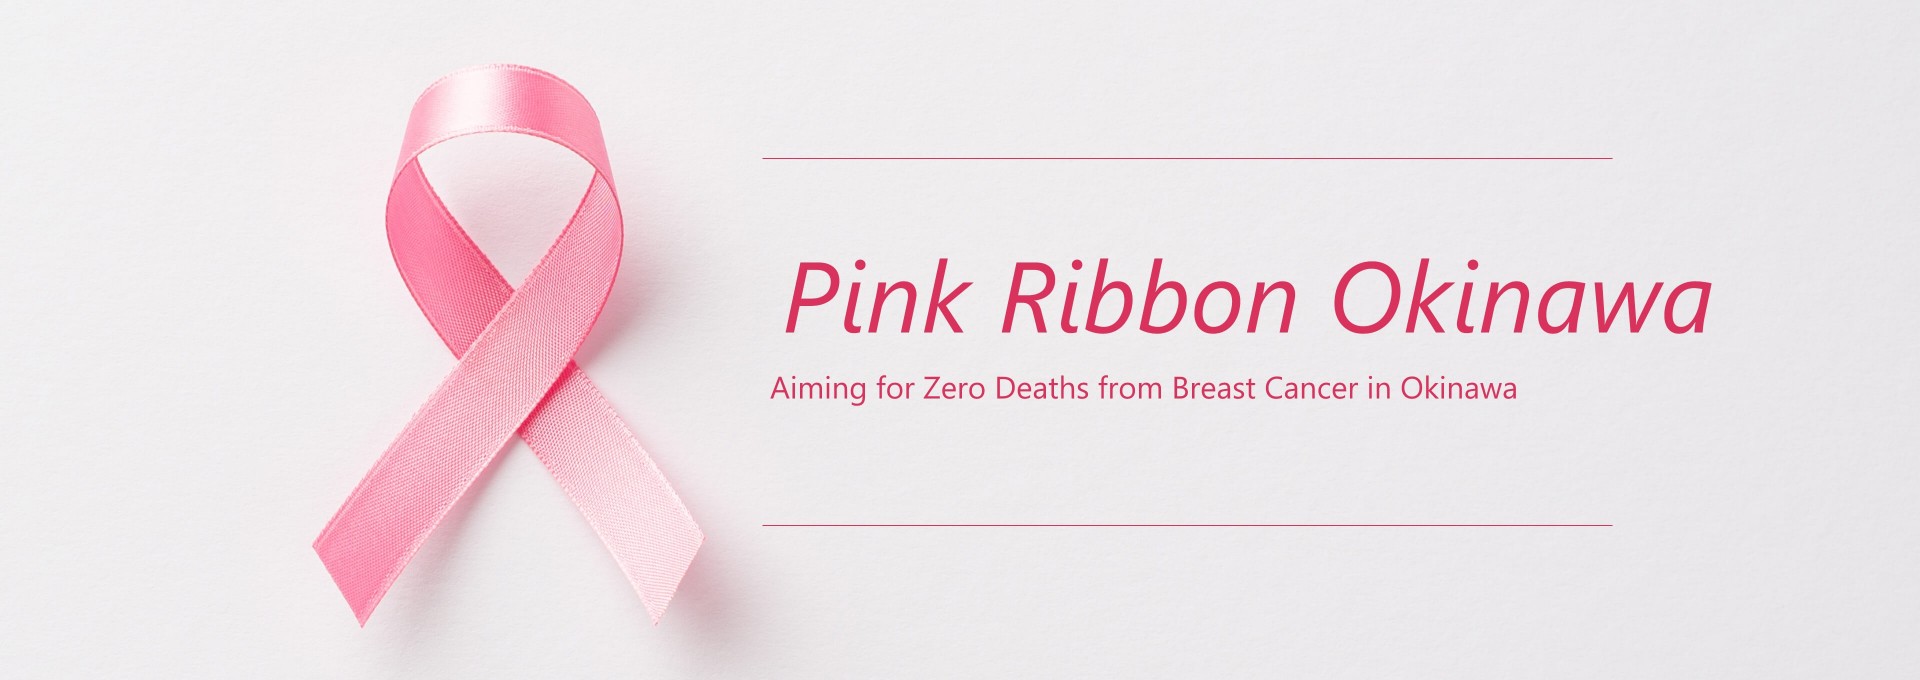 Pink Ribbon Okinawa